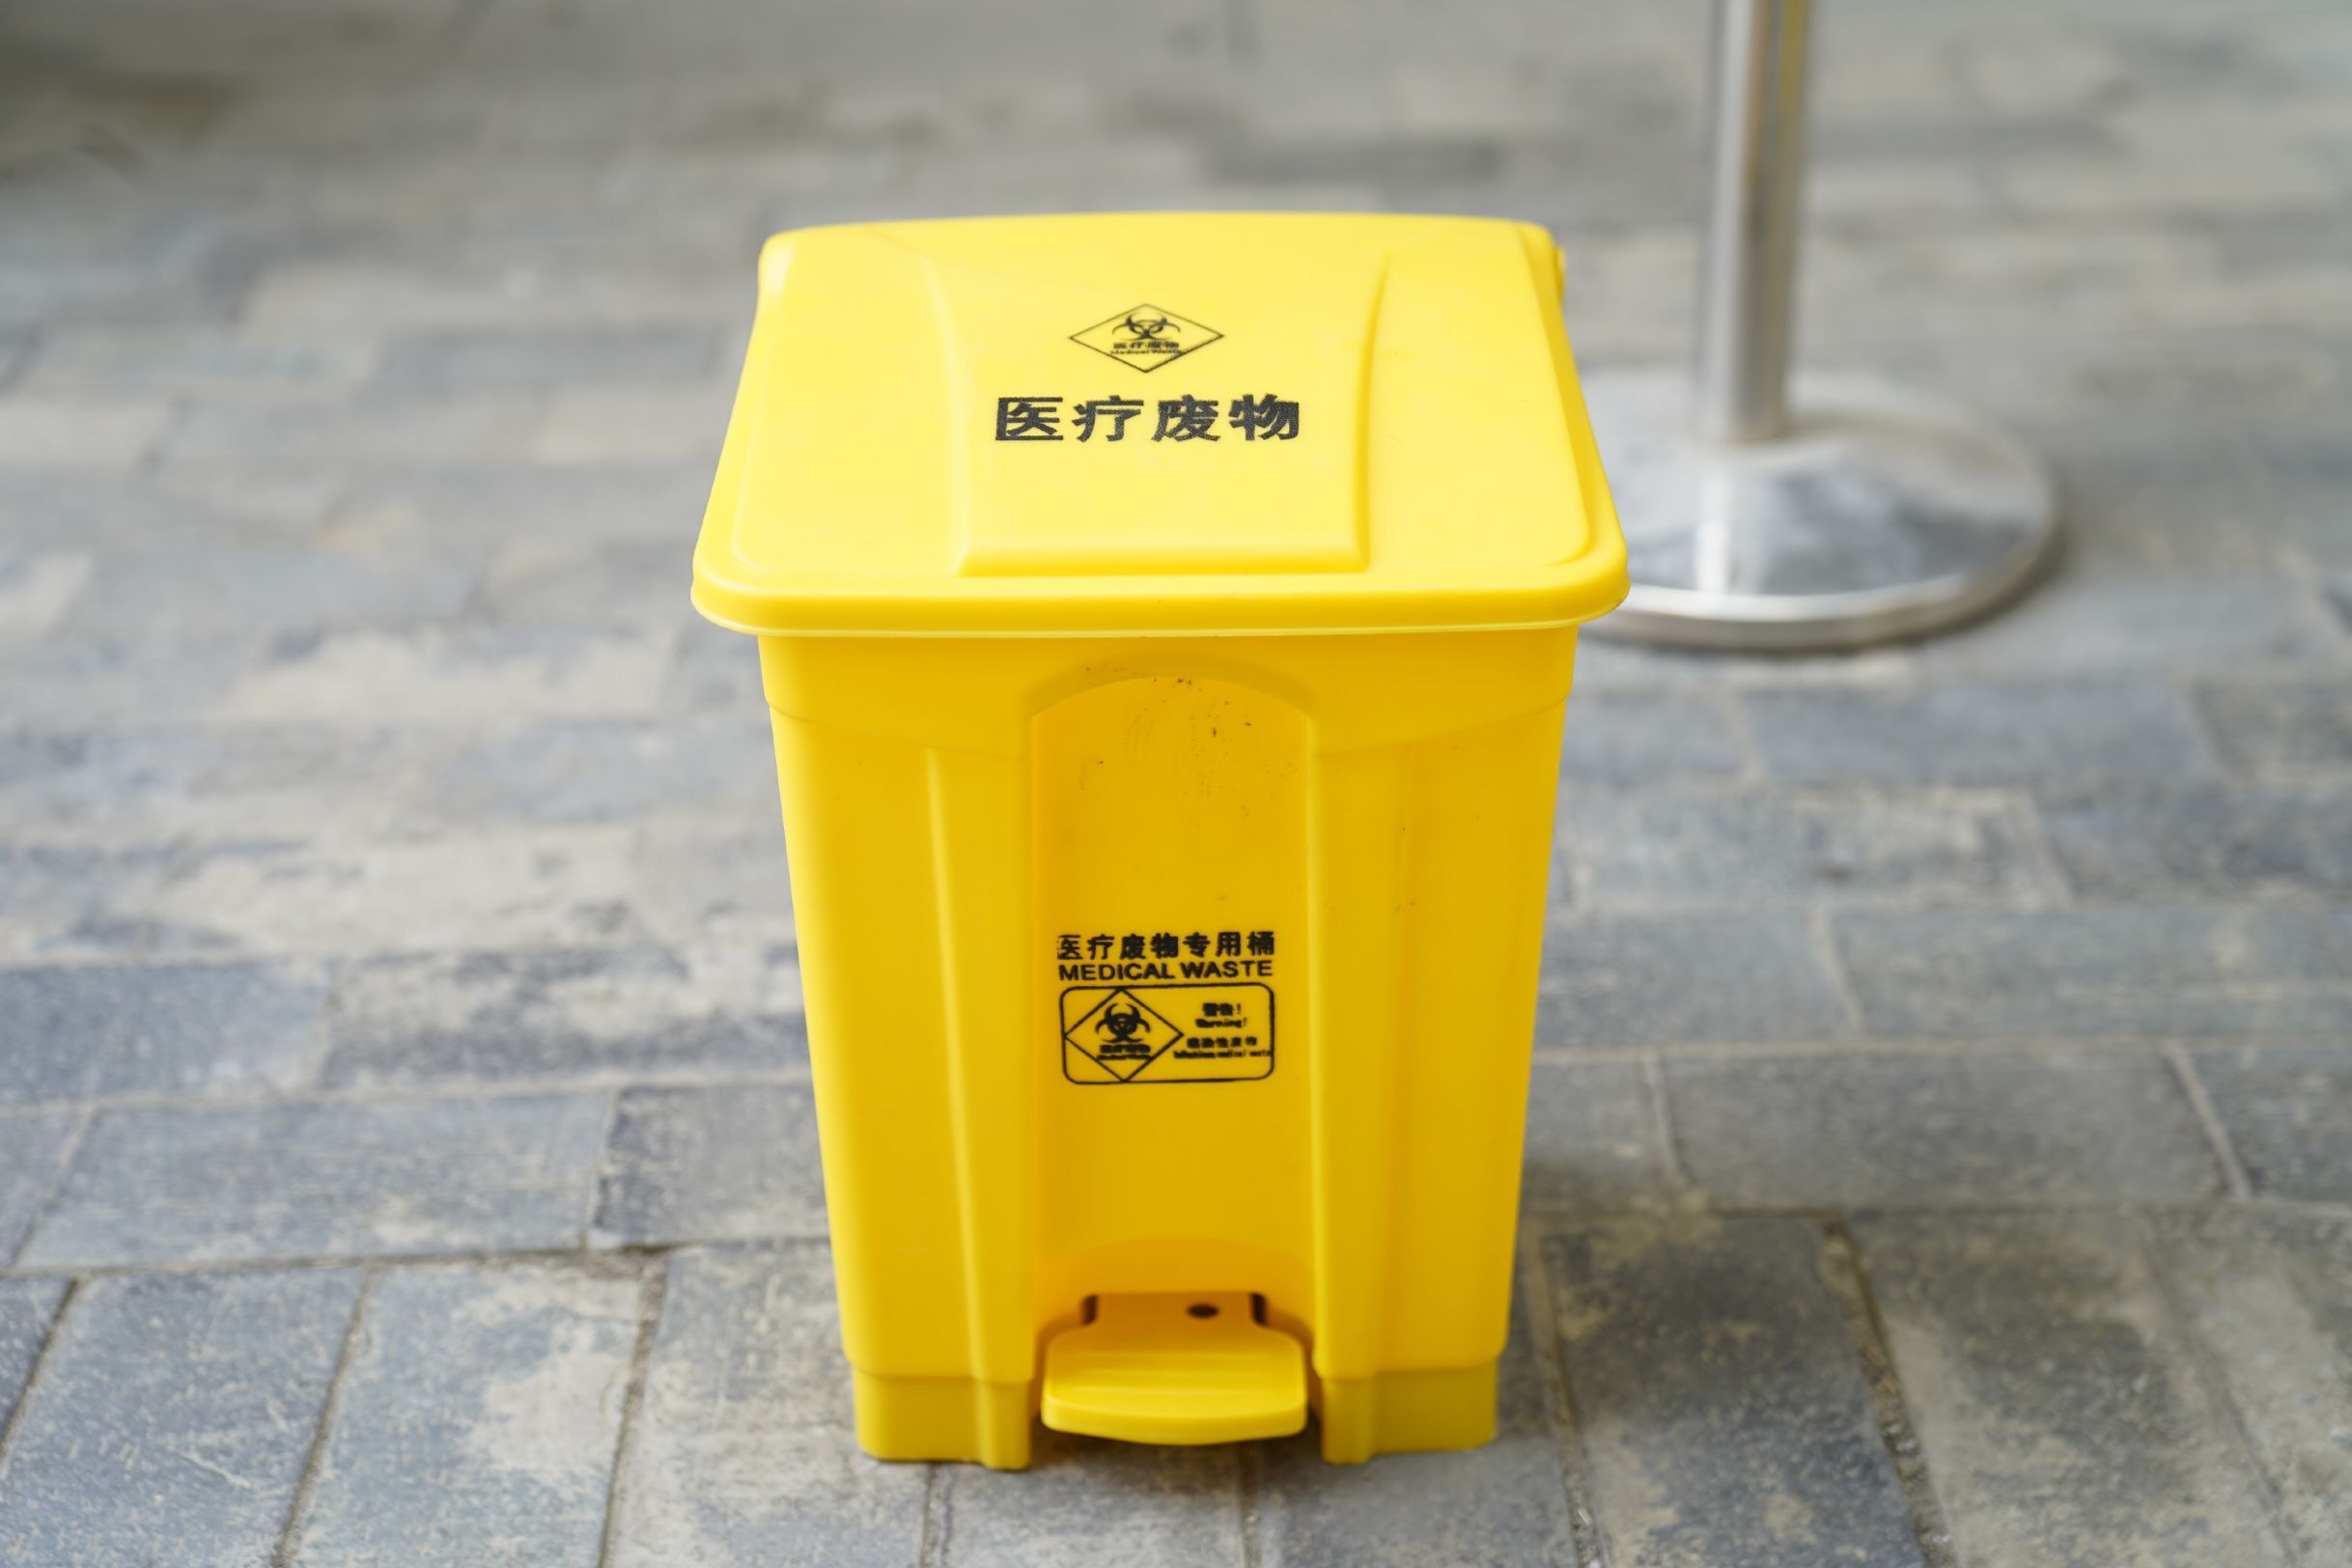 垃圾筒 成都四分类垃圾桶厂 欢迎来电咨询